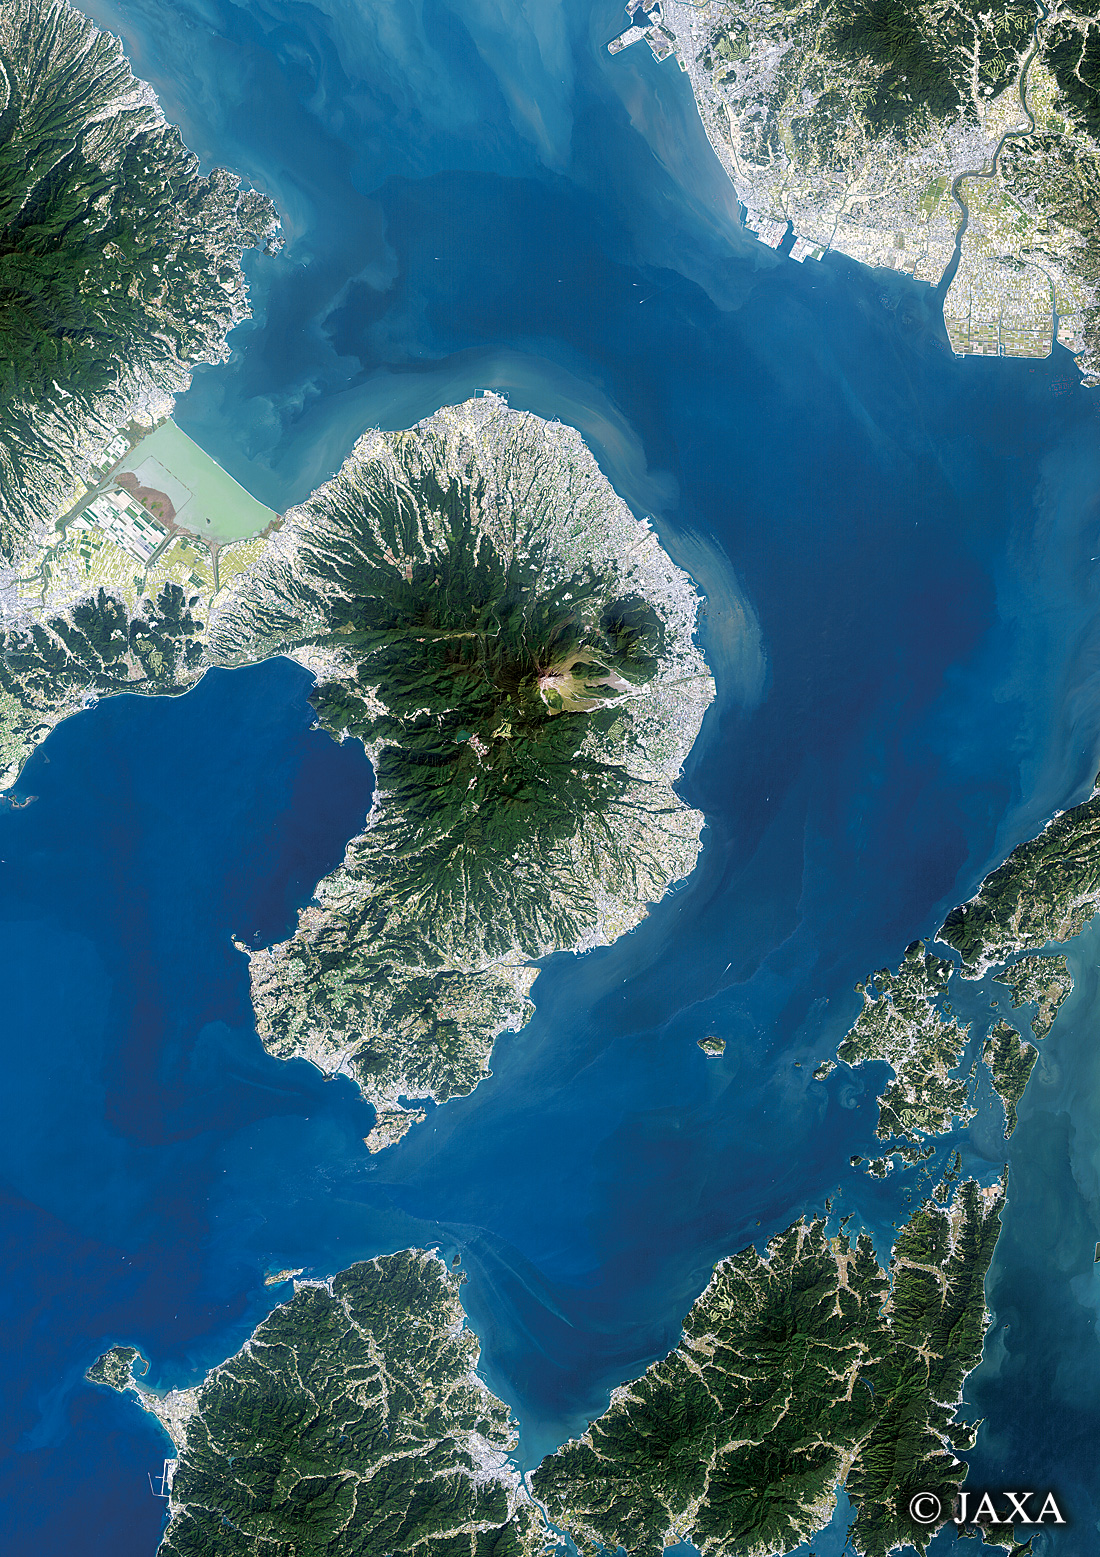 だいちから見た日本の都市 島原半島:衛星画像